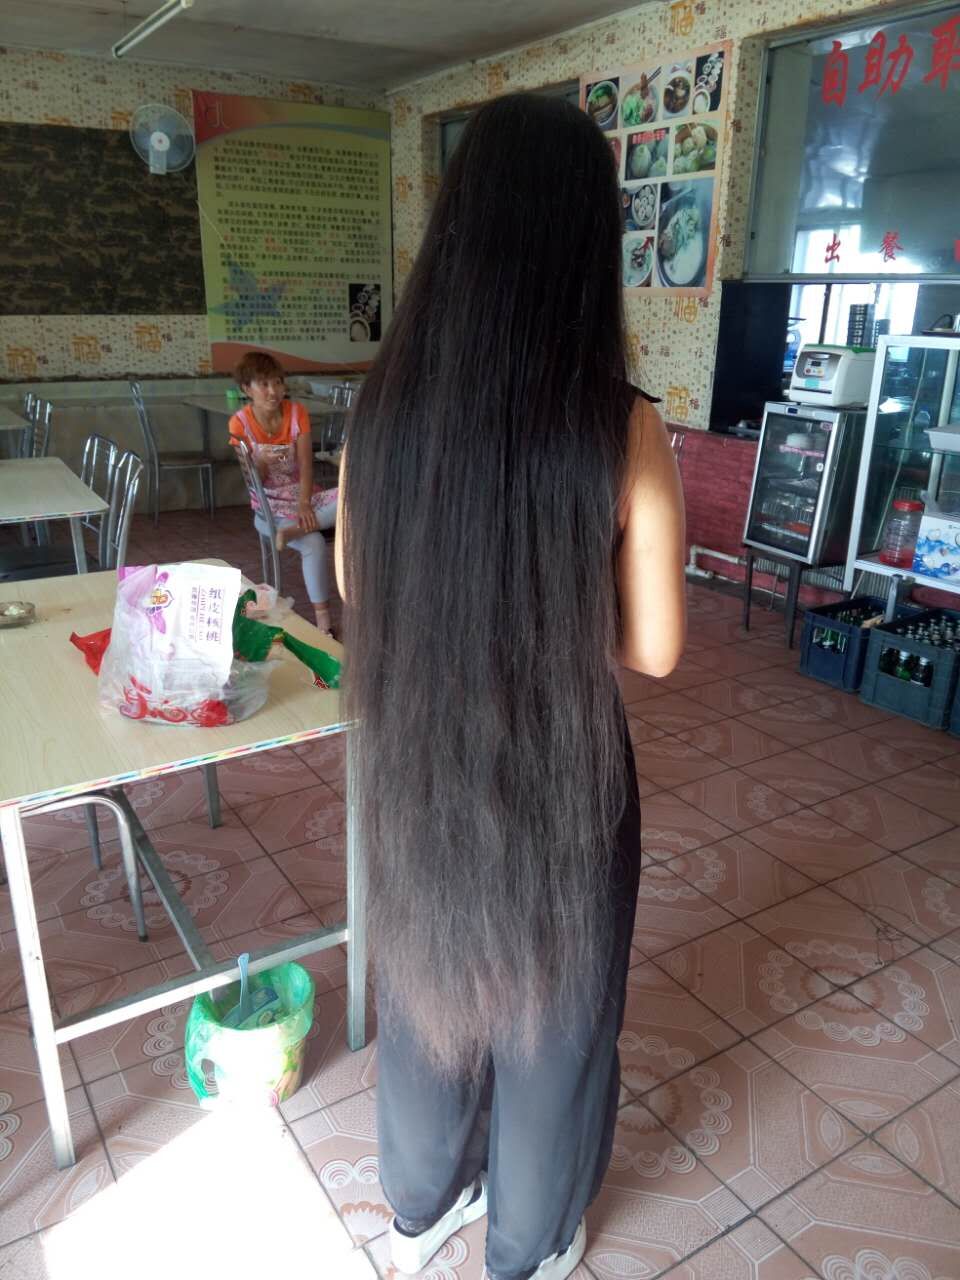 Knee length long hair in room